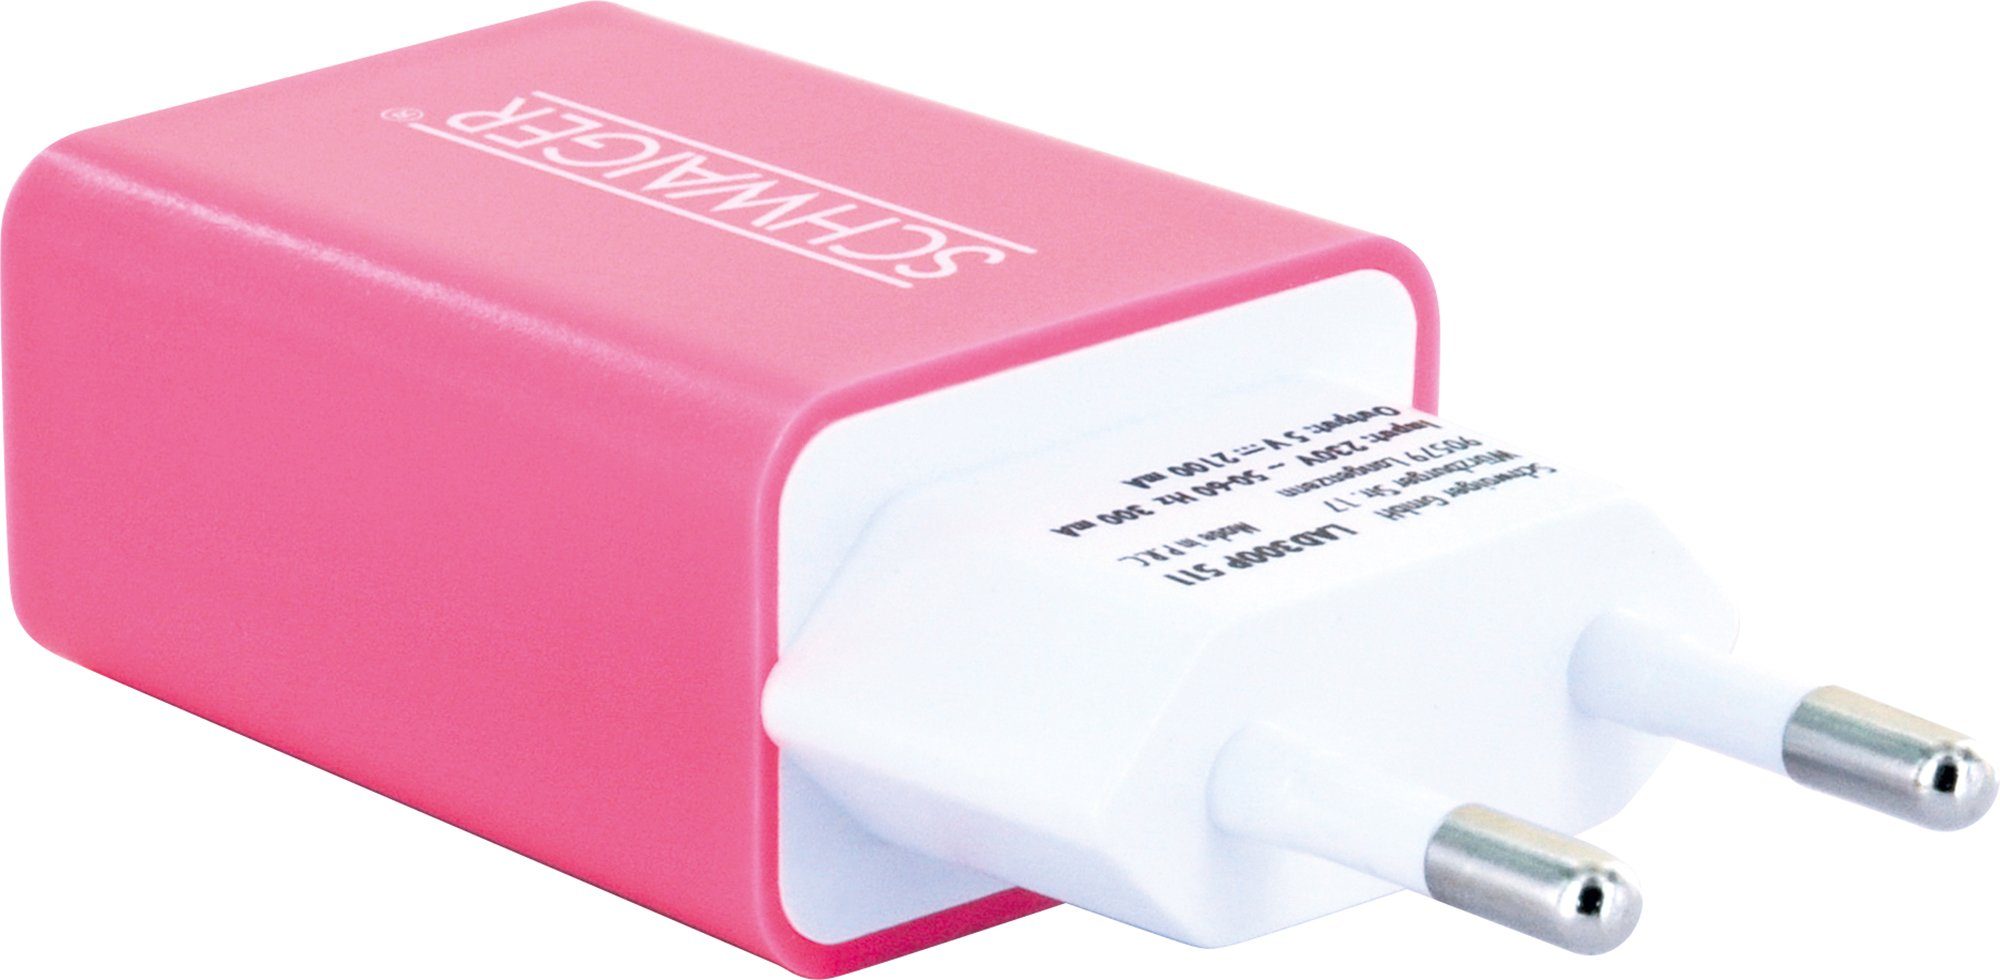 Schwaiger LAD300P 511 KFZ-Adapter Eurostecker zu USB 2.0 A Buchse, integriertes Multi-Schutz Sicherheitssystem pink